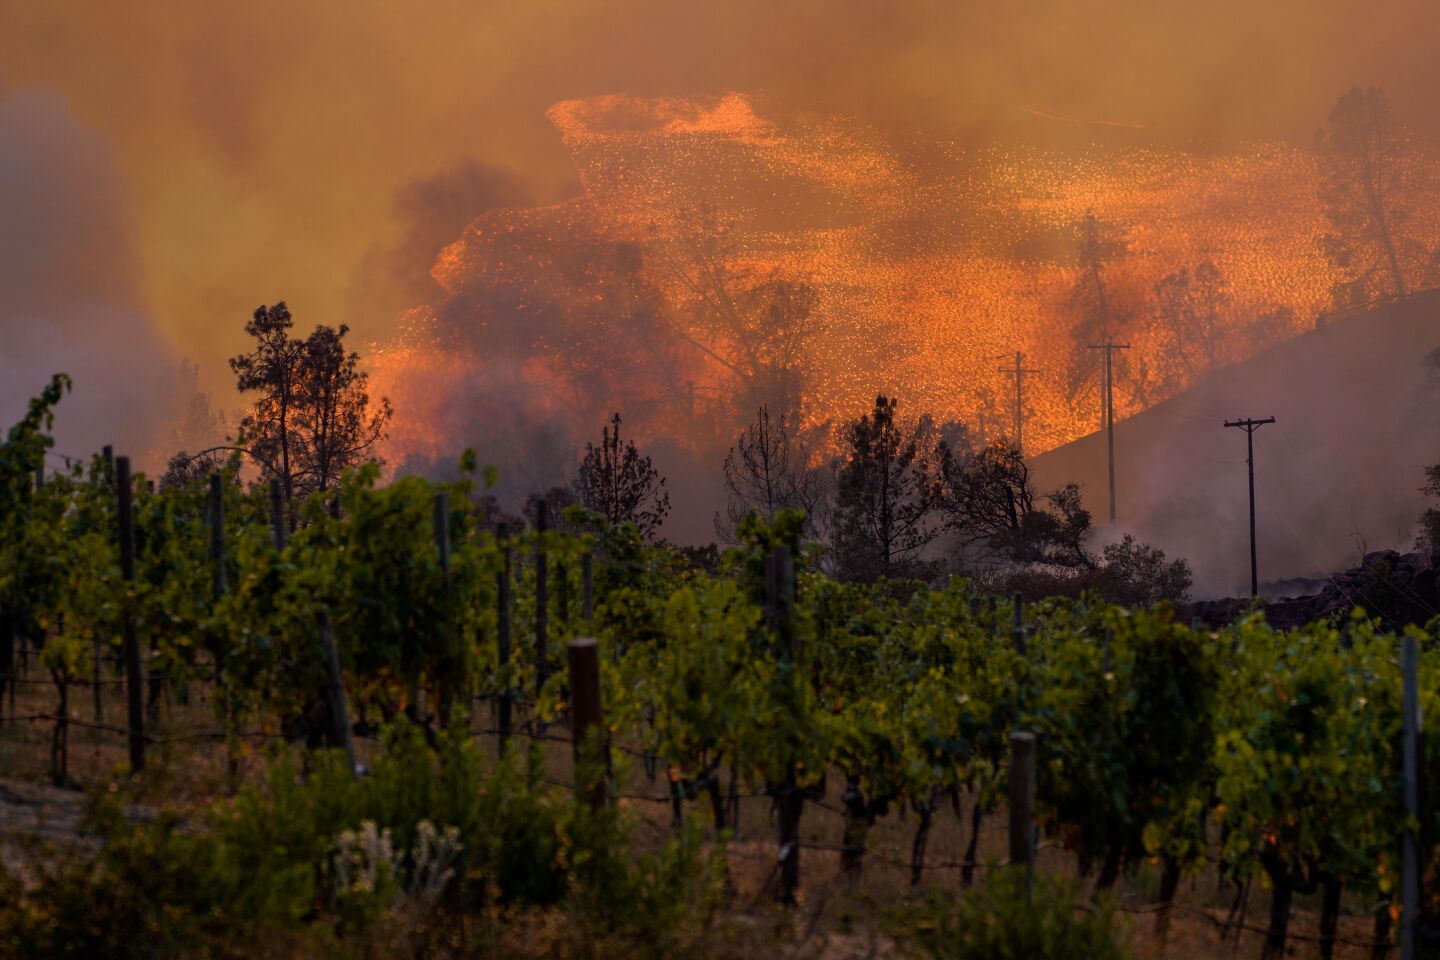 Fire roars above a vineyard.